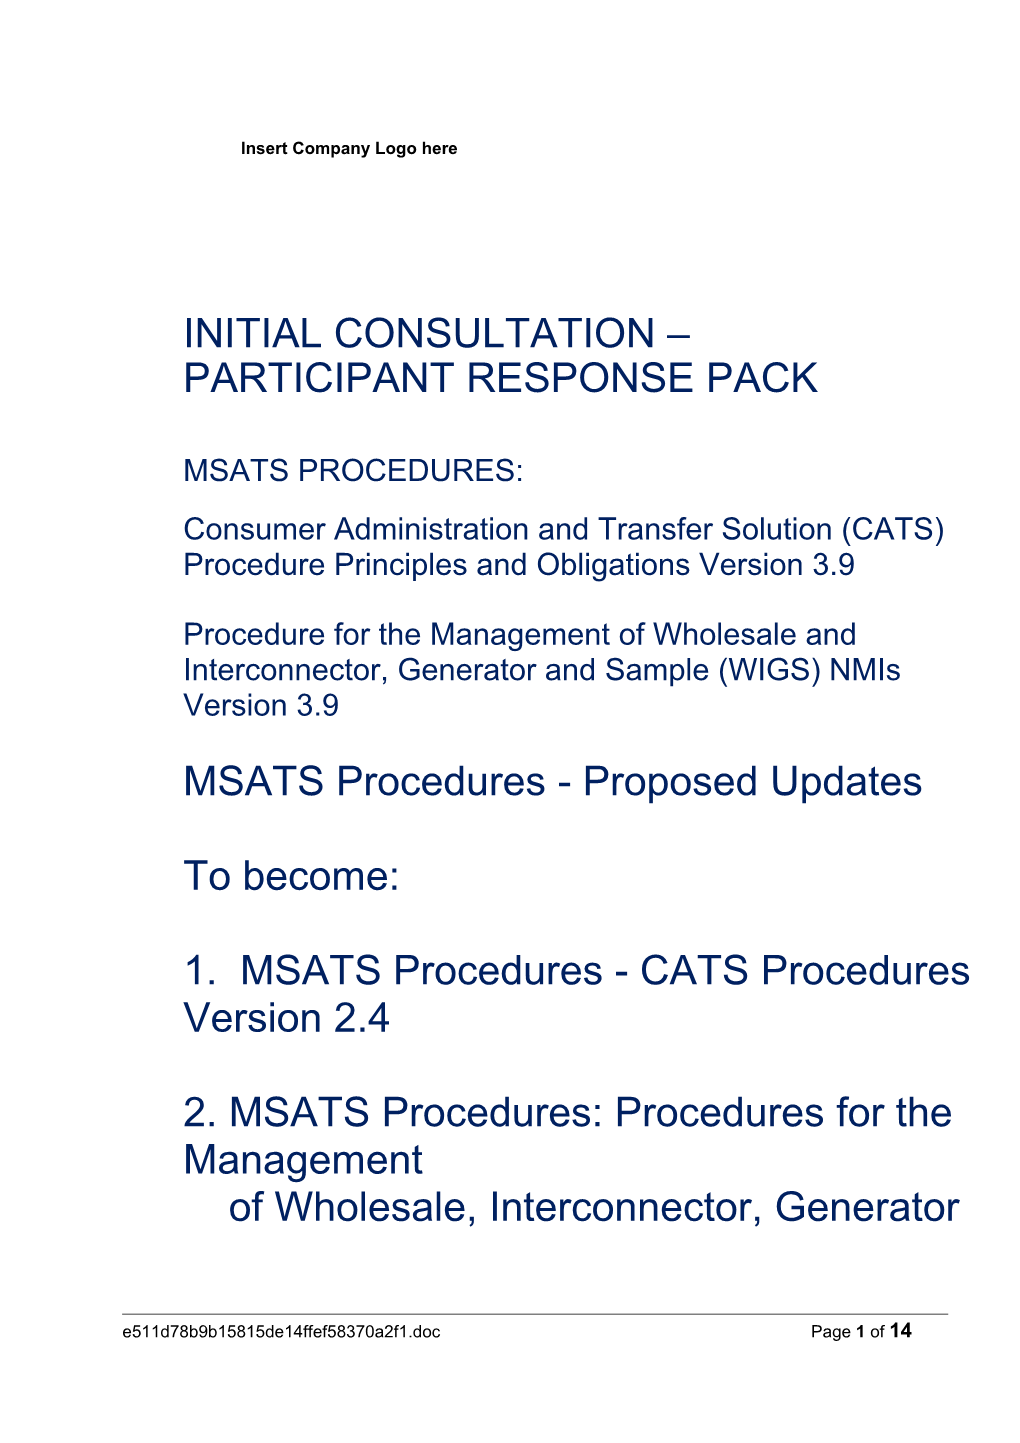 MSATS Procedures V3.9 Participant Response Pack Template V0.01